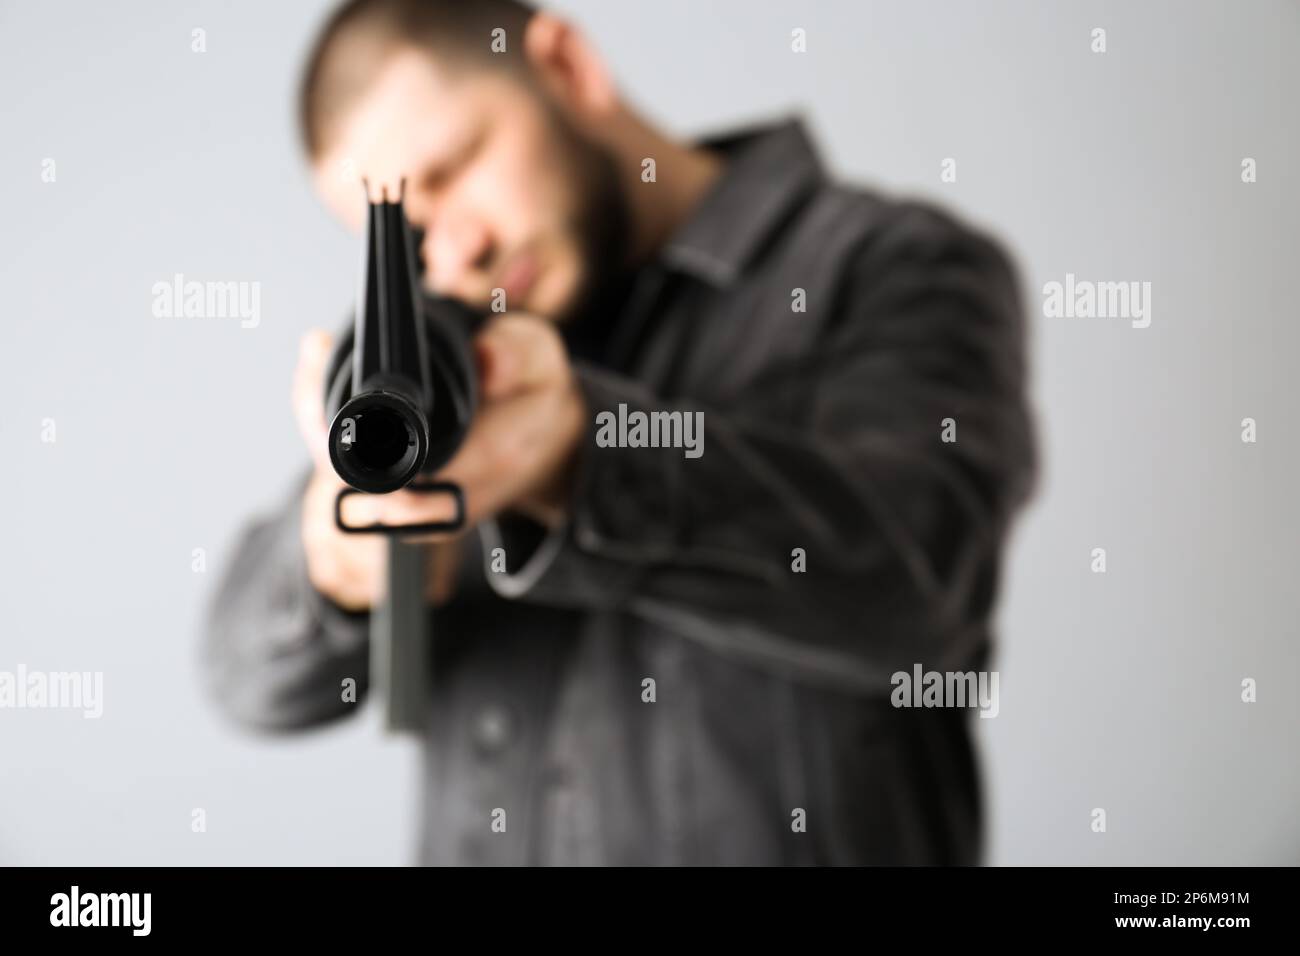 Fusil d'assaut. Homme visant le fusil sur fond clair, se concentrer sur le museau Banque D'Images